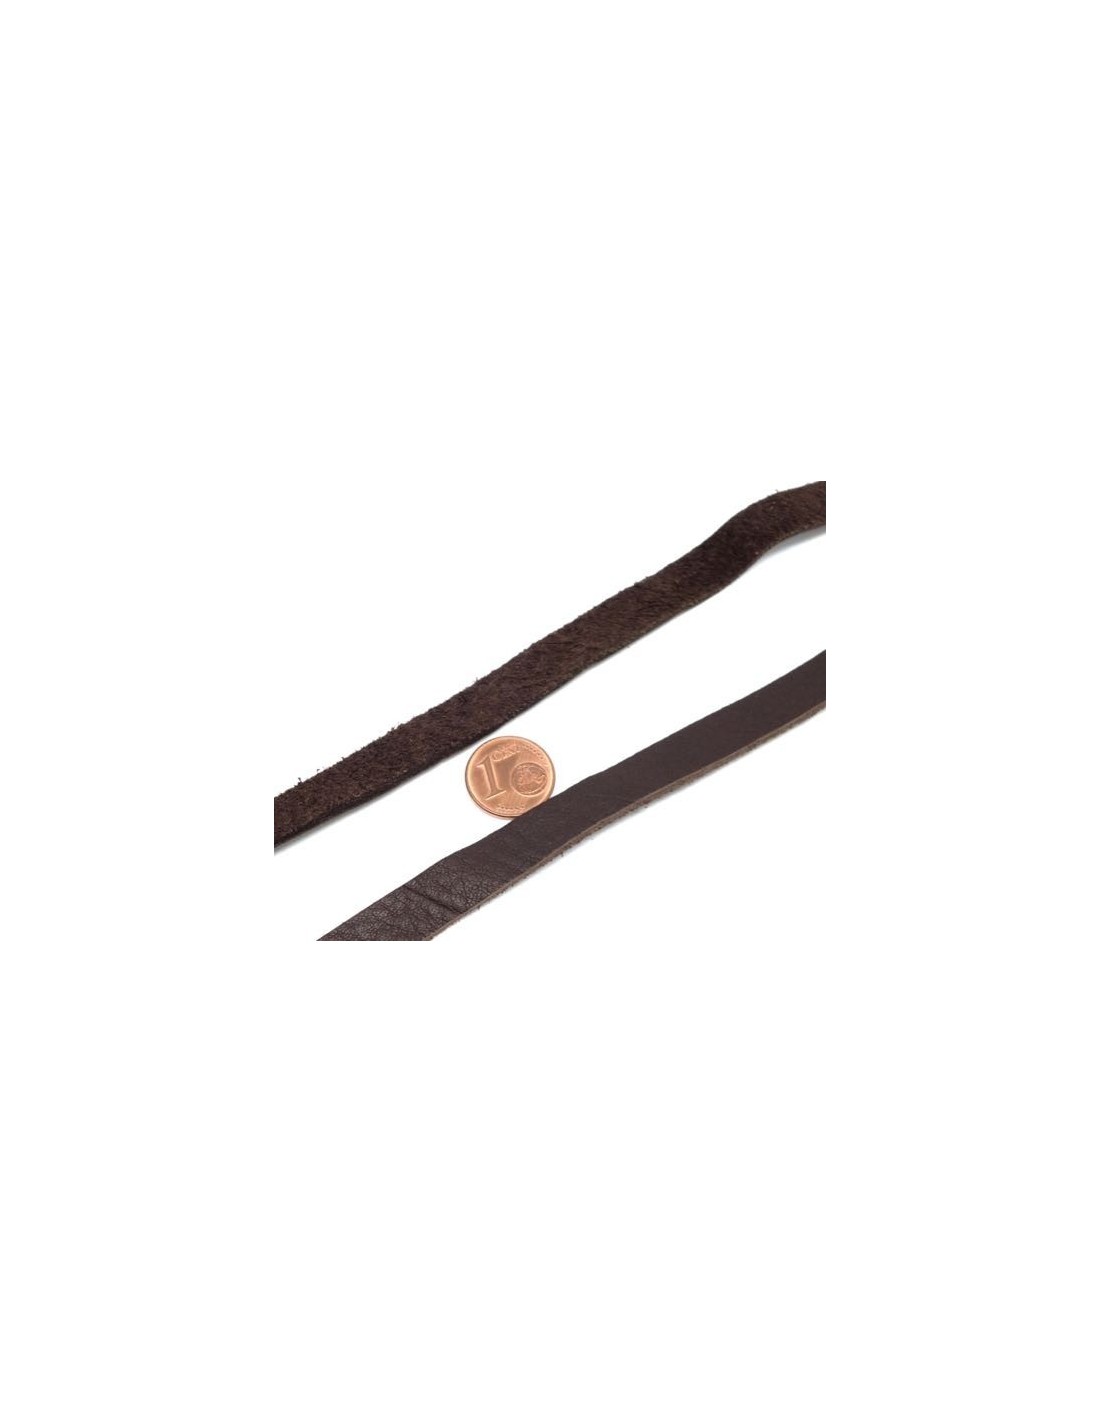 Lanière en cuir marron 3 cm de large - La Mercerie de l'Etoile de coton